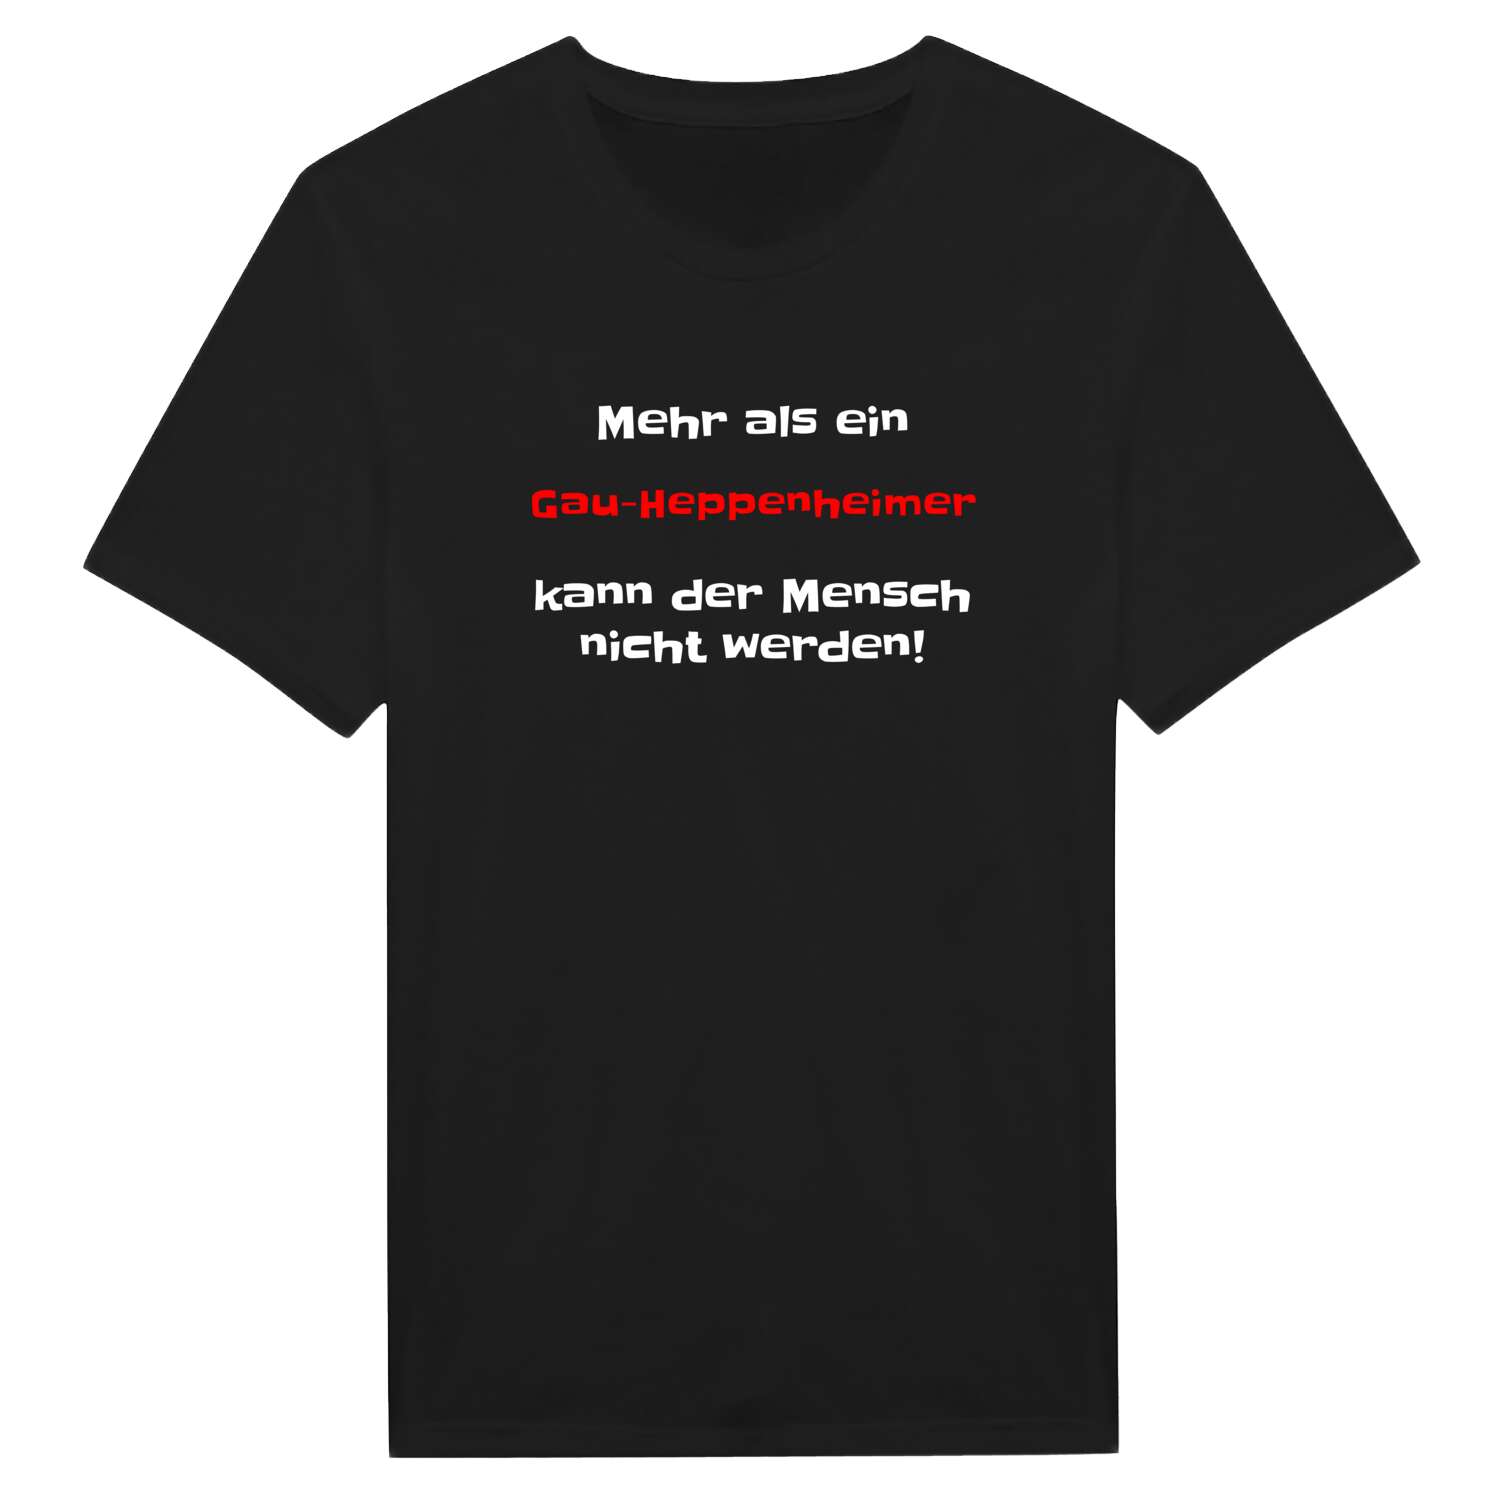 Gau-Heppenheim T-Shirt »Mehr als ein«